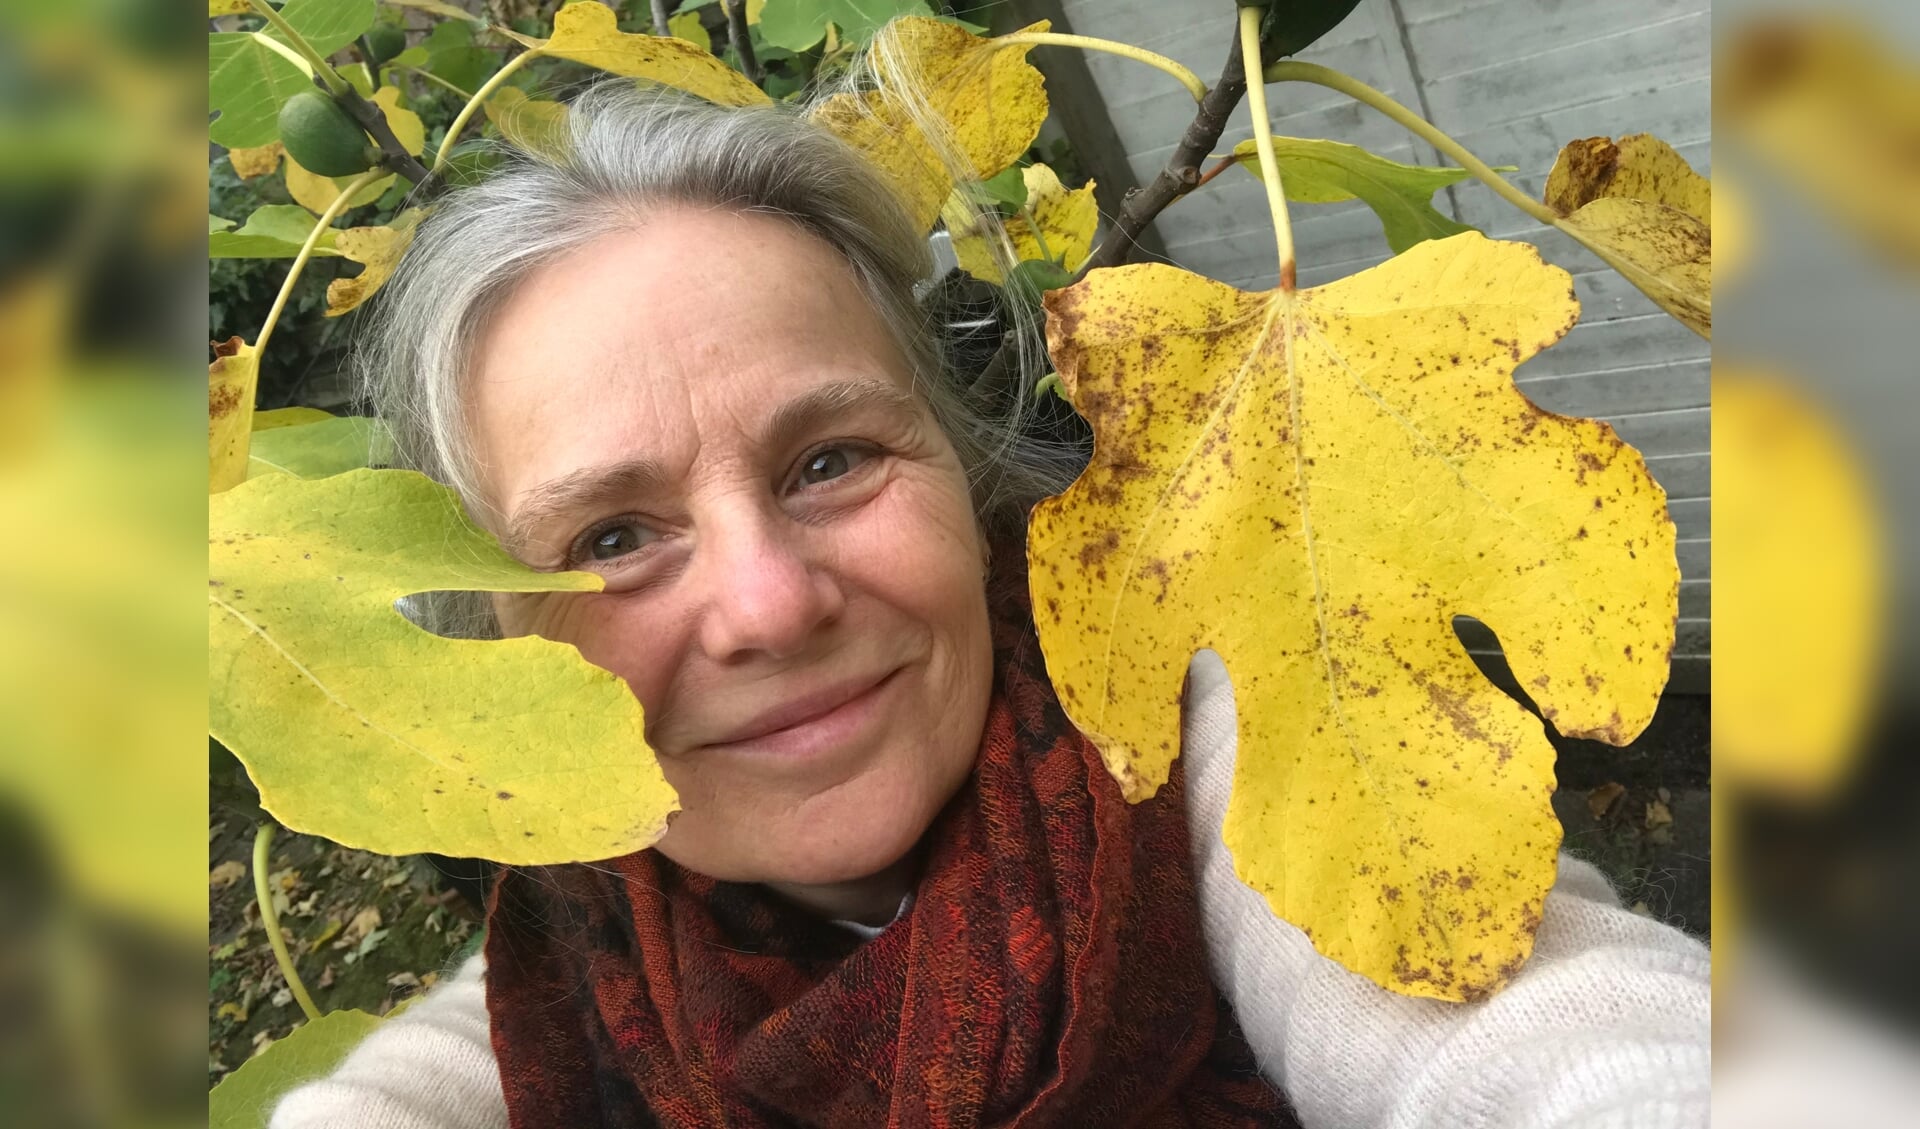 Schrijfdocent Helena Jansz laat zich deze keer inspireren door de herfst. 